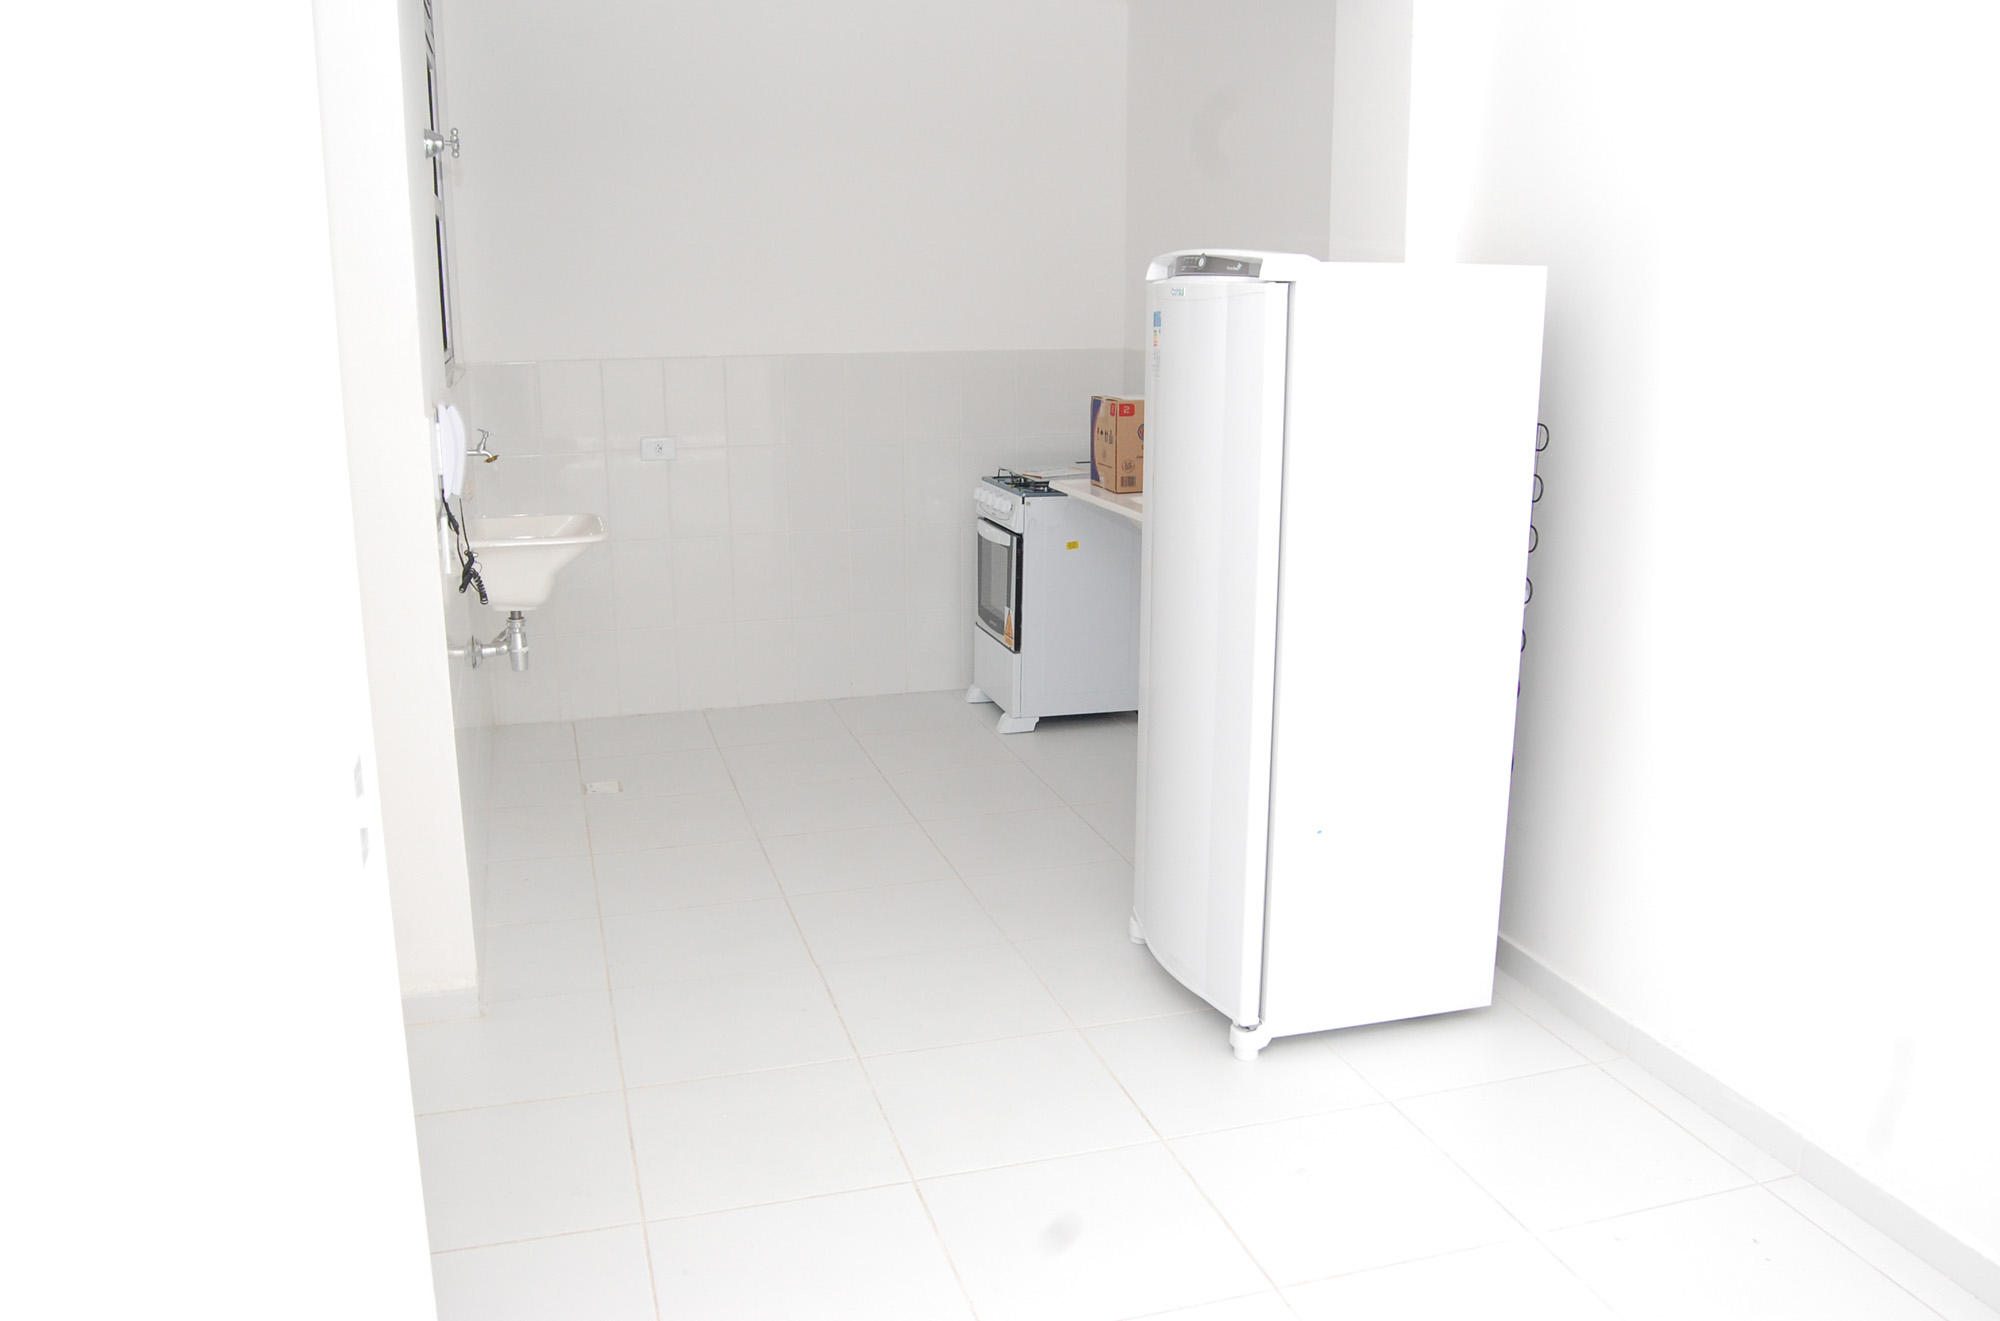 Imagem de dentro de uma das unidades, mostrando uma geladeira e um fogão que foram doados para os moradores